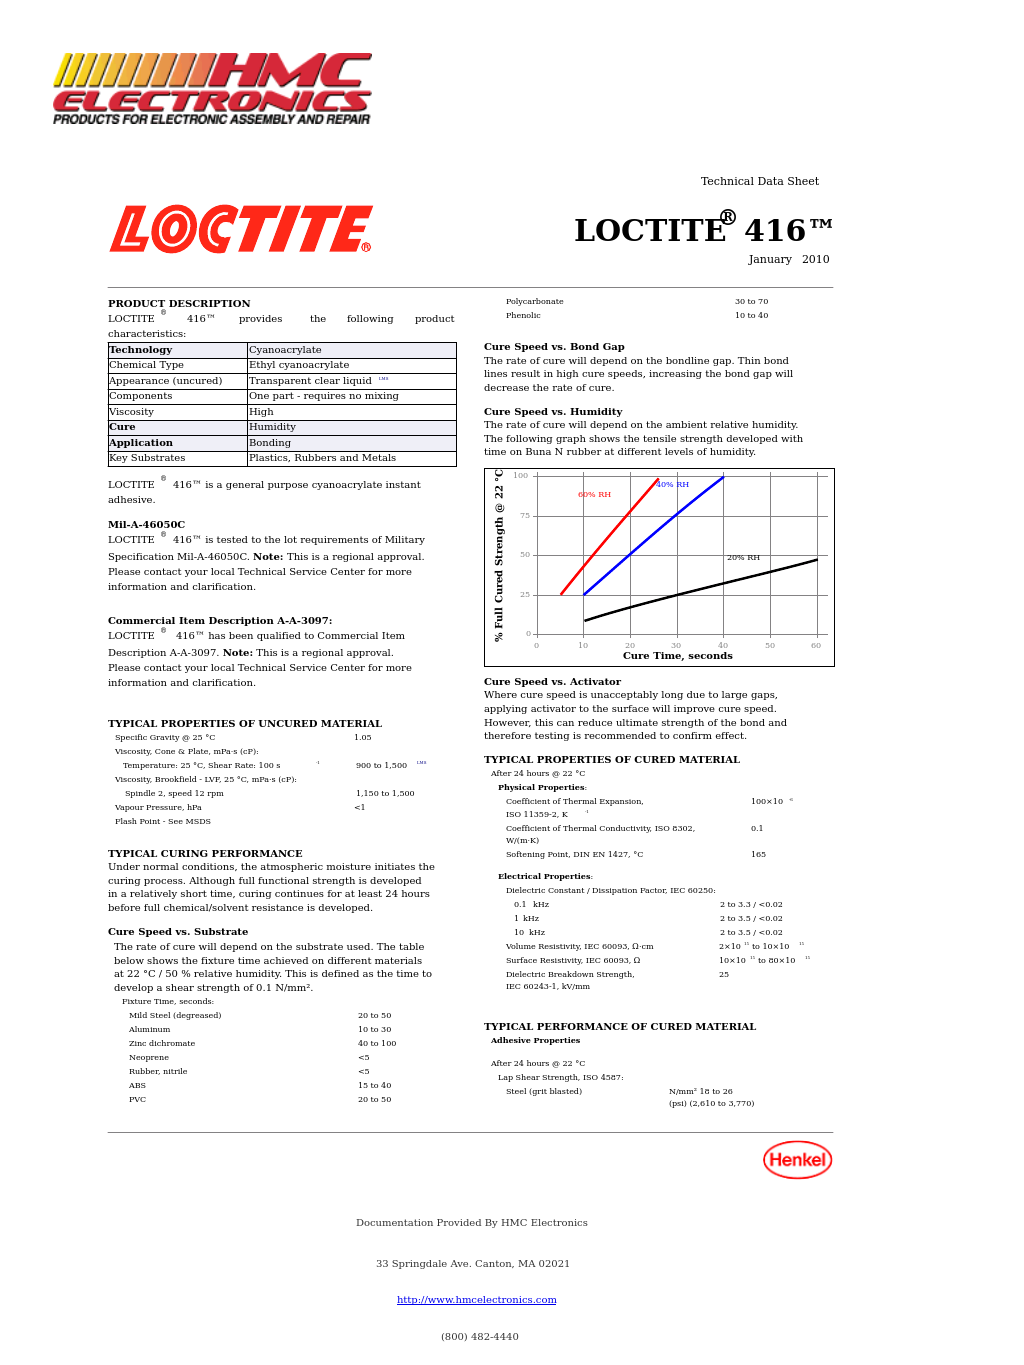 41650 Loctite 416 SuperBonder, Instant Adhesive, Gap Filling Plastic Bonder